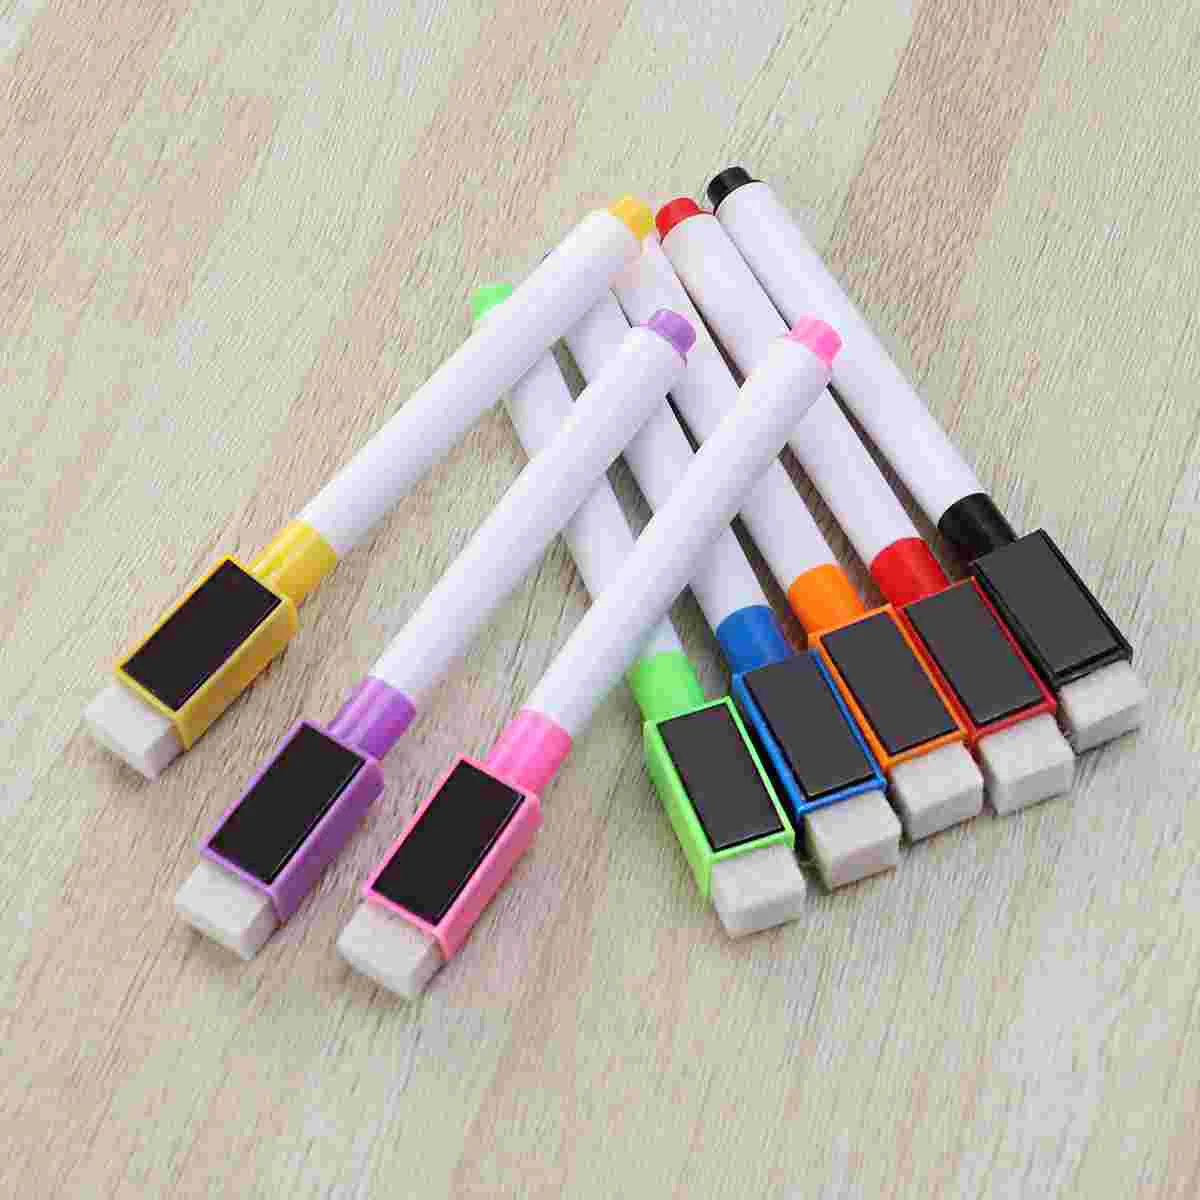 8 kom. vrhunskim šarene prijenosni mini-markera trake za 8 različitih boja, magnetska olovka za bijele ploče, markeri za suho brisanje